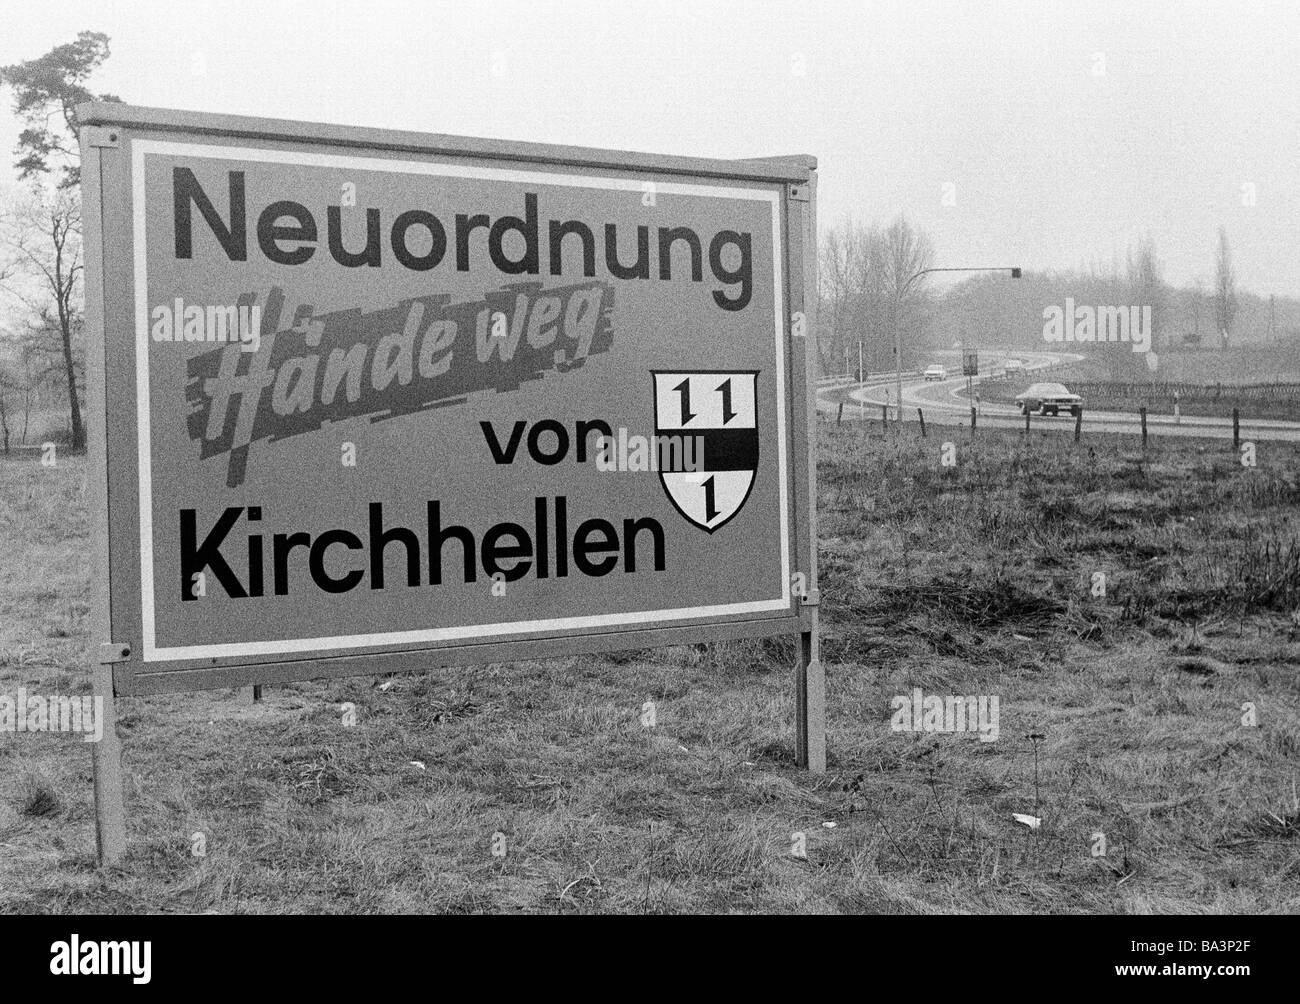 Negli anni settanta, foto in bianco e nero, comune di riforma in Germania nel periodo tra il 1967 e il 1978, comunale riorganizzazione, cartello su un salice vicino a una strada di campagna che indica una protesta contro la incorporazione di Kirchhellen alla città di Bottrop, D-Bottrop, D-Bottrop-Kirchhellen, la zona della Ruhr, Renania settentrionale-Vestfalia Foto Stock